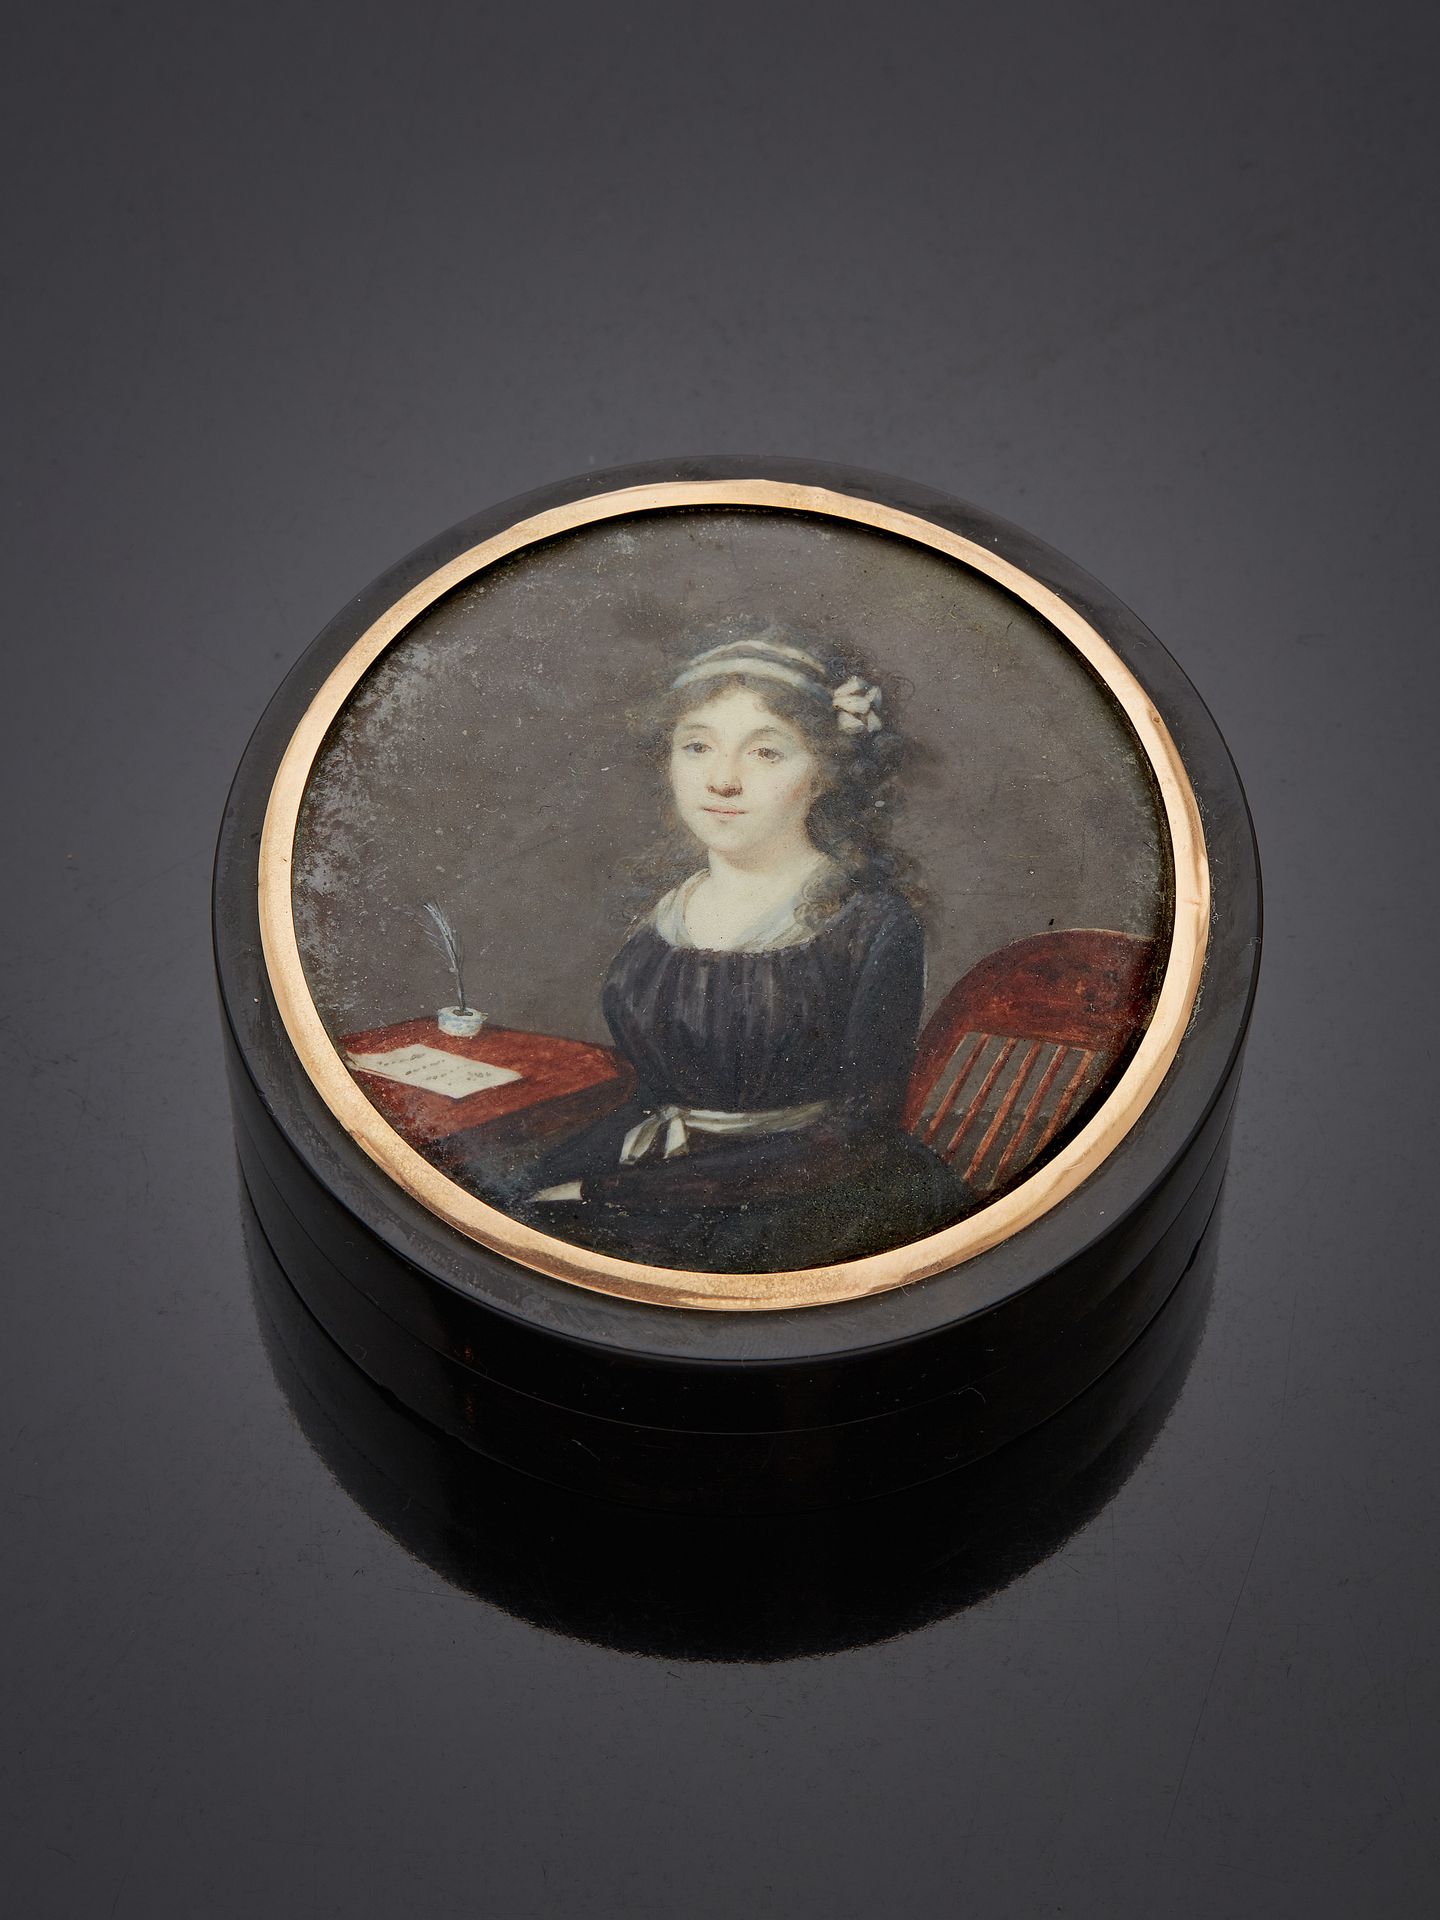 Null * 19世纪
少女肖像
装在盒子上的微型画
H.3 x 8 厘米